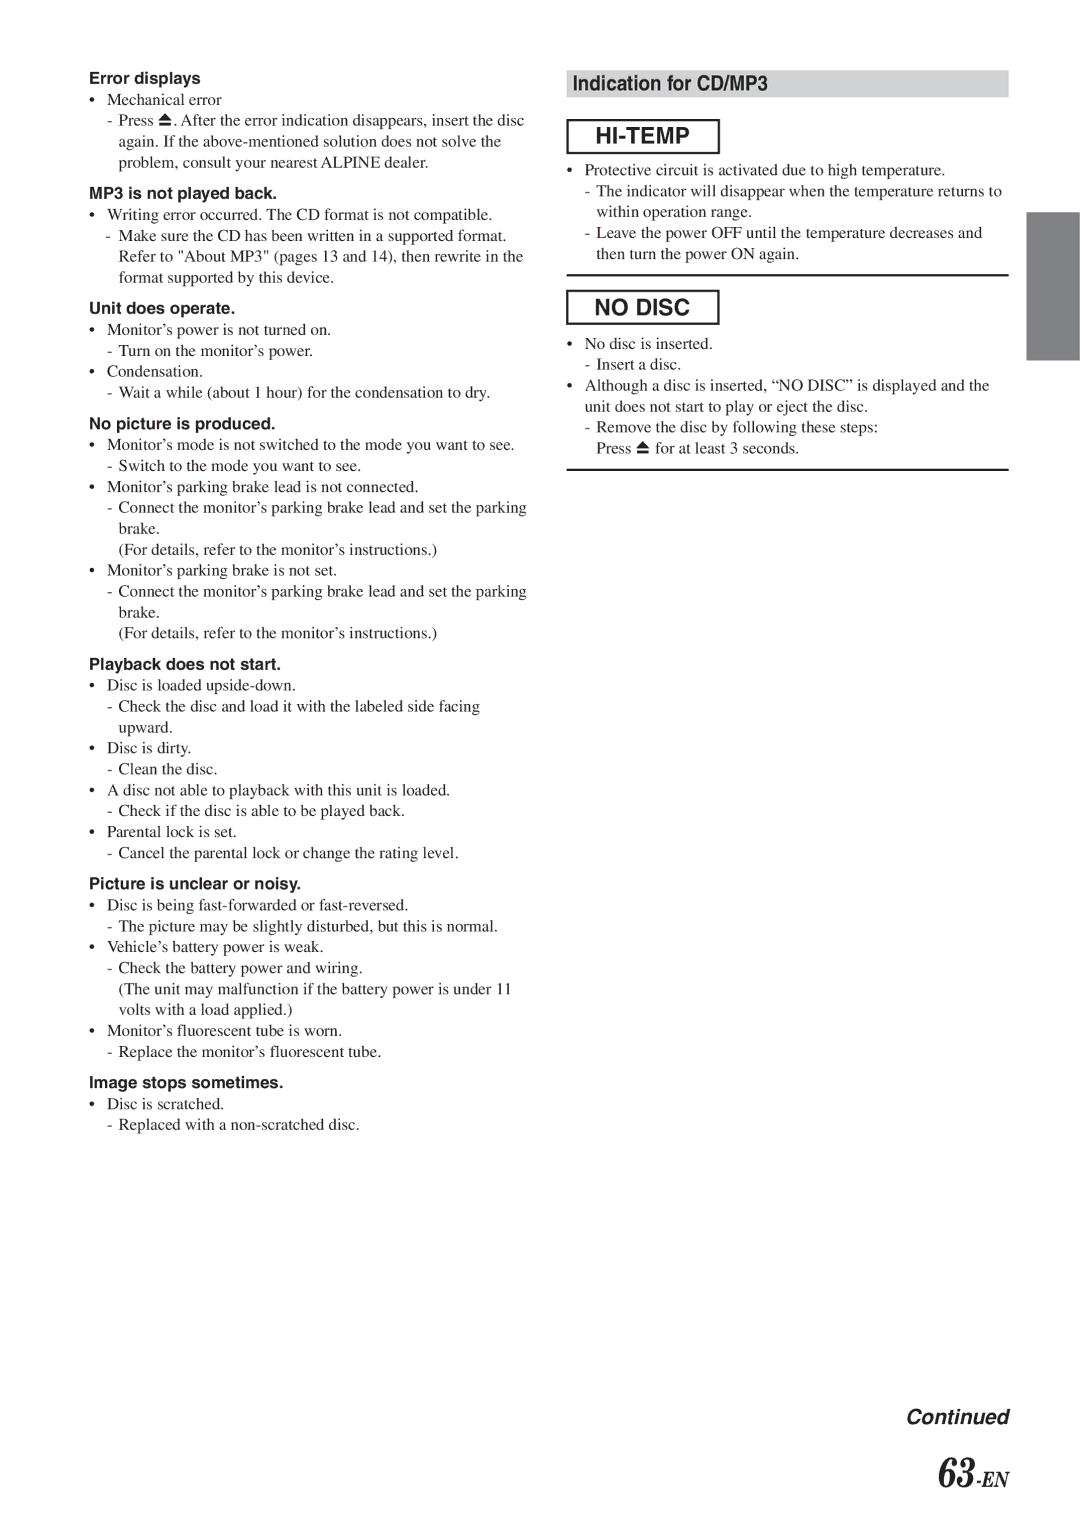 Alpine IVA-D901 owner manual Indication for CD/MP3, 63-EN 